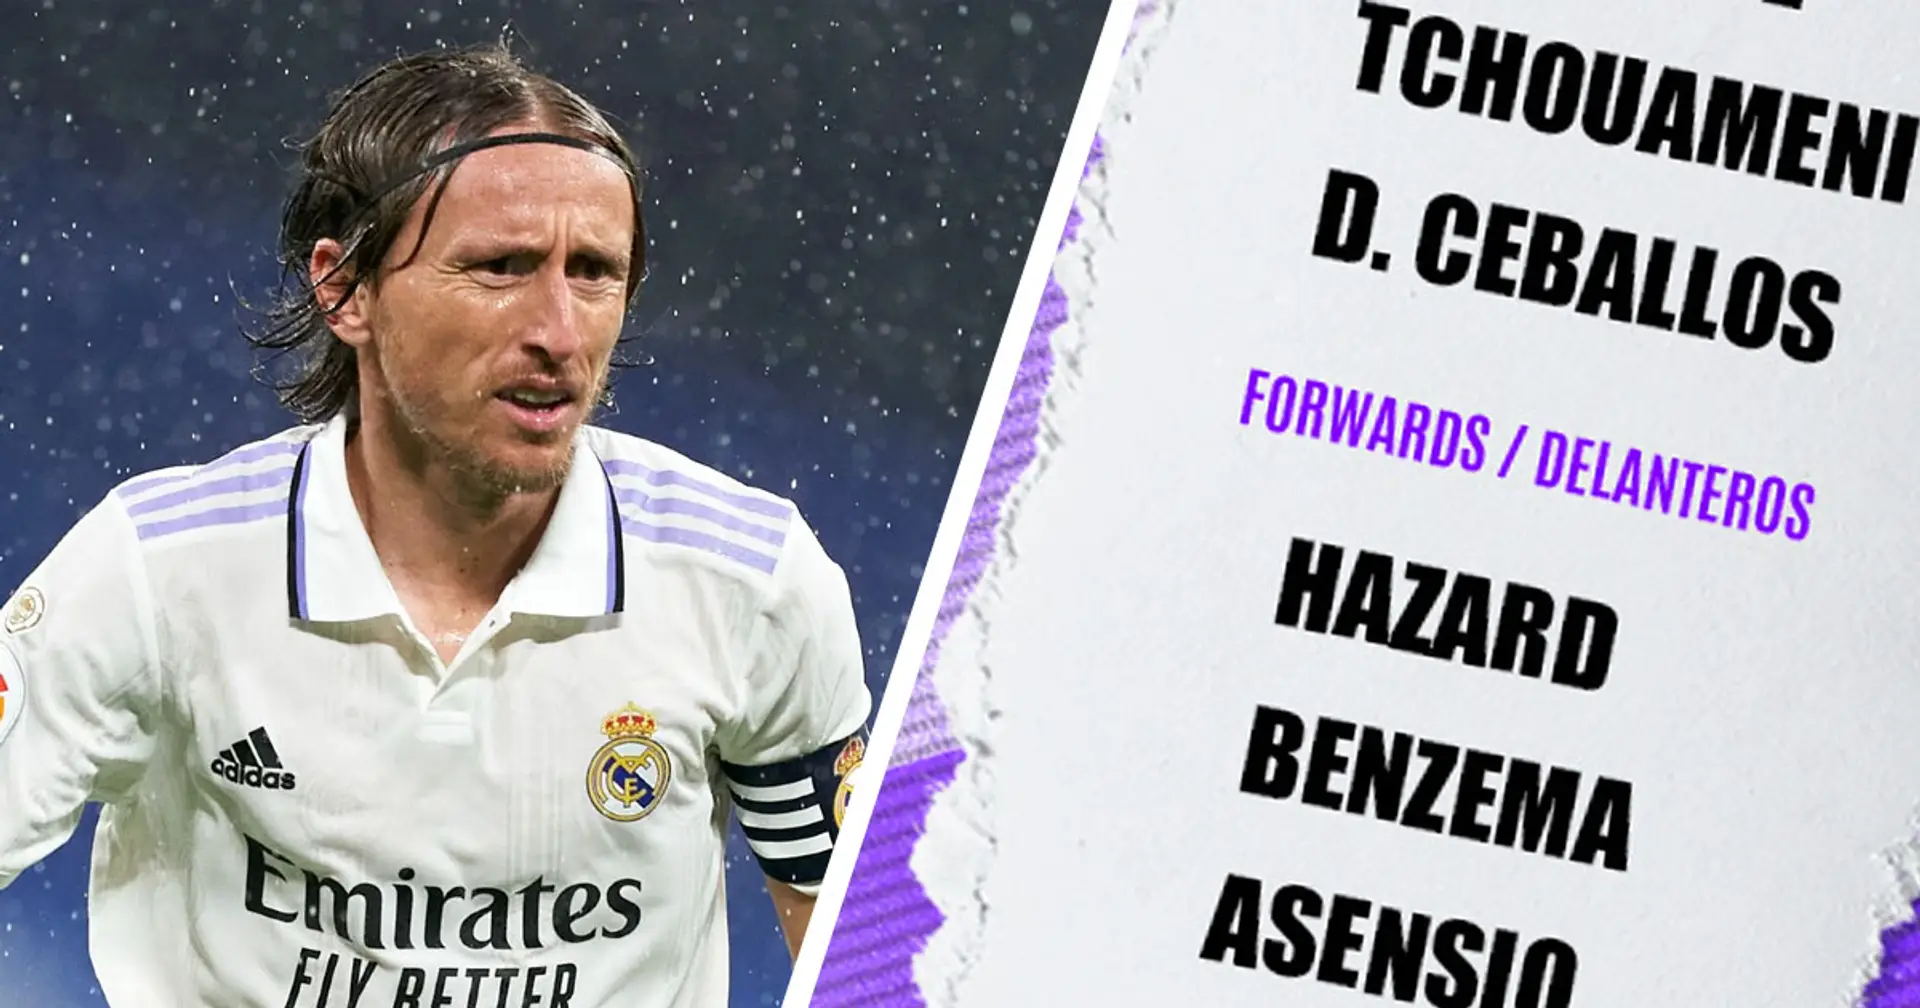 Modric et Tchouameni de retour : le Real Madrid dévoile son groupe de 23 joueurs pour le match contre Valladolid